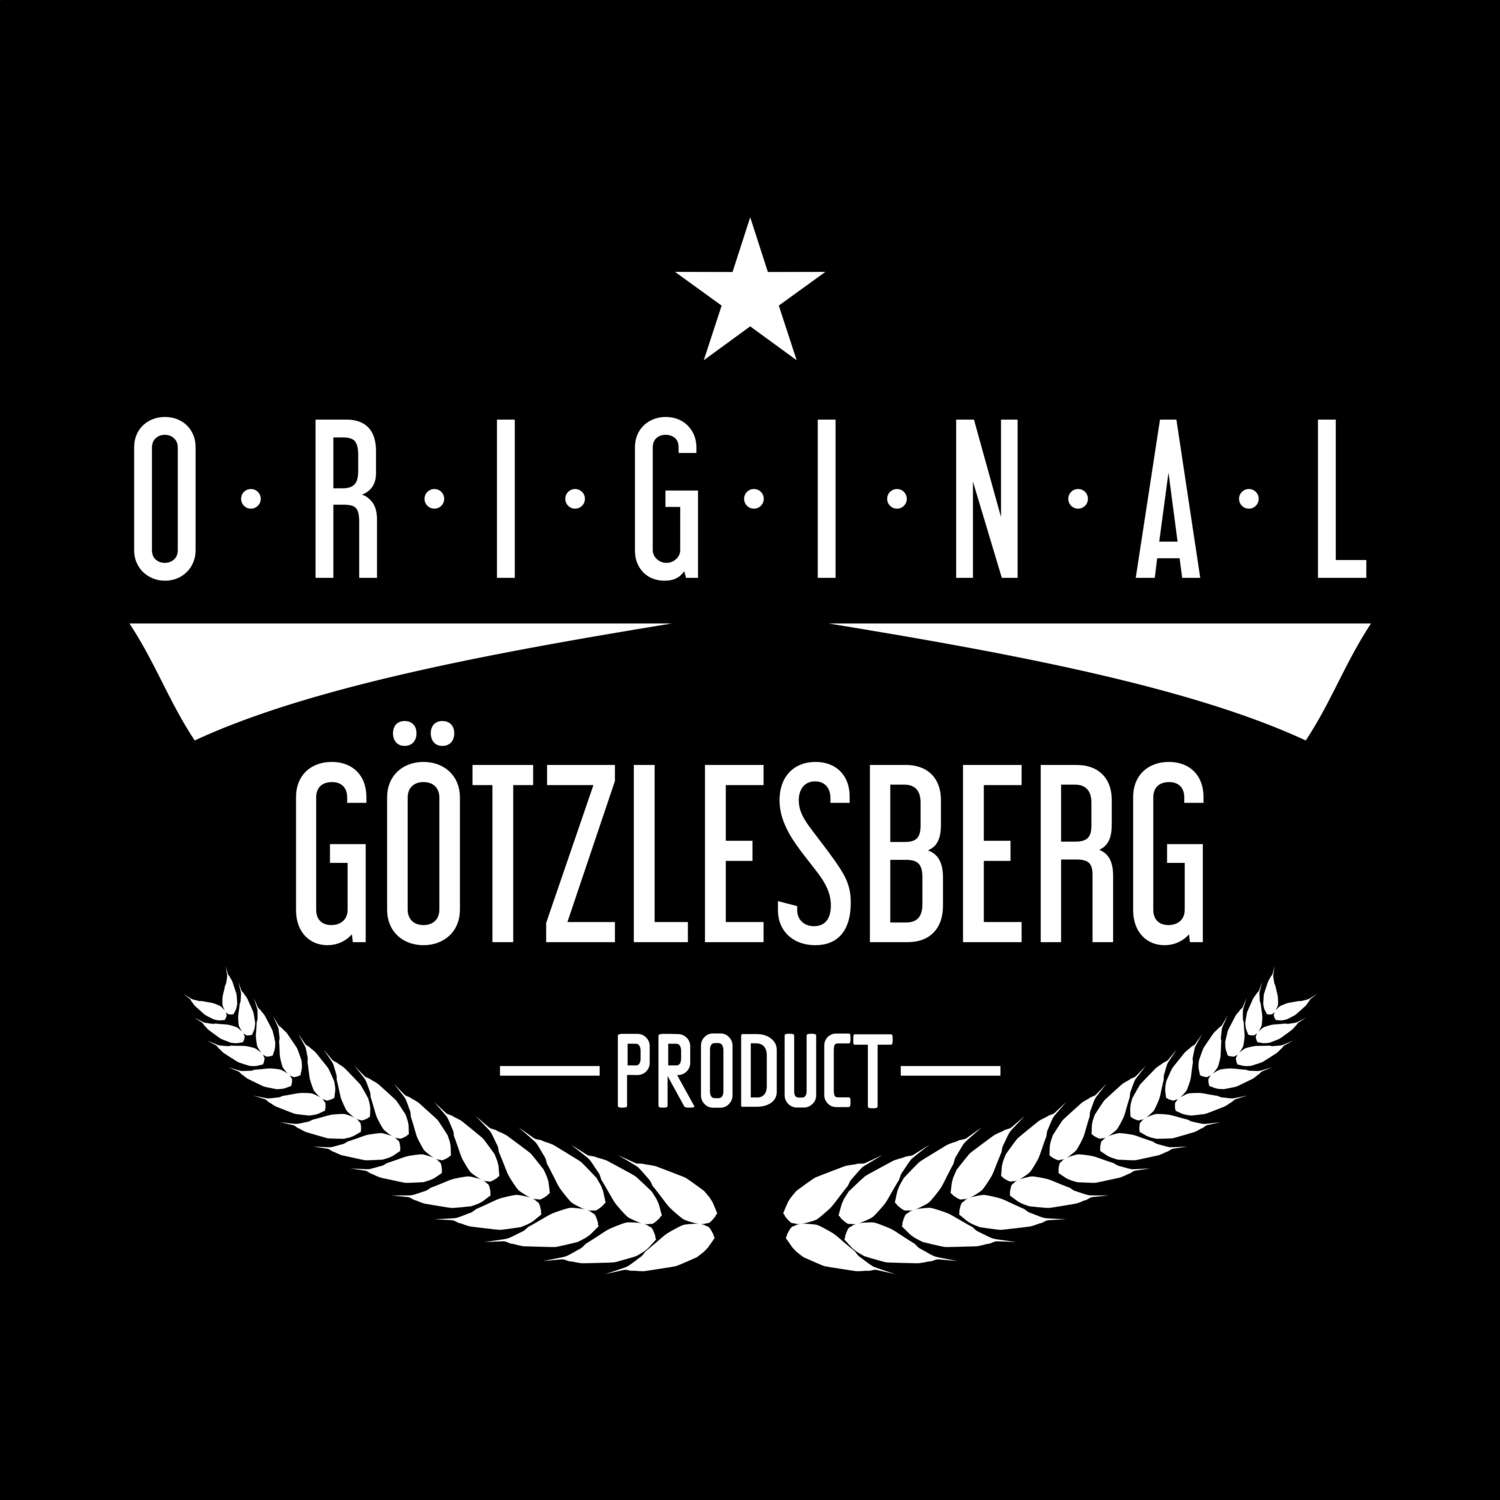 Götzlesberg T-Shirt »Original Product«